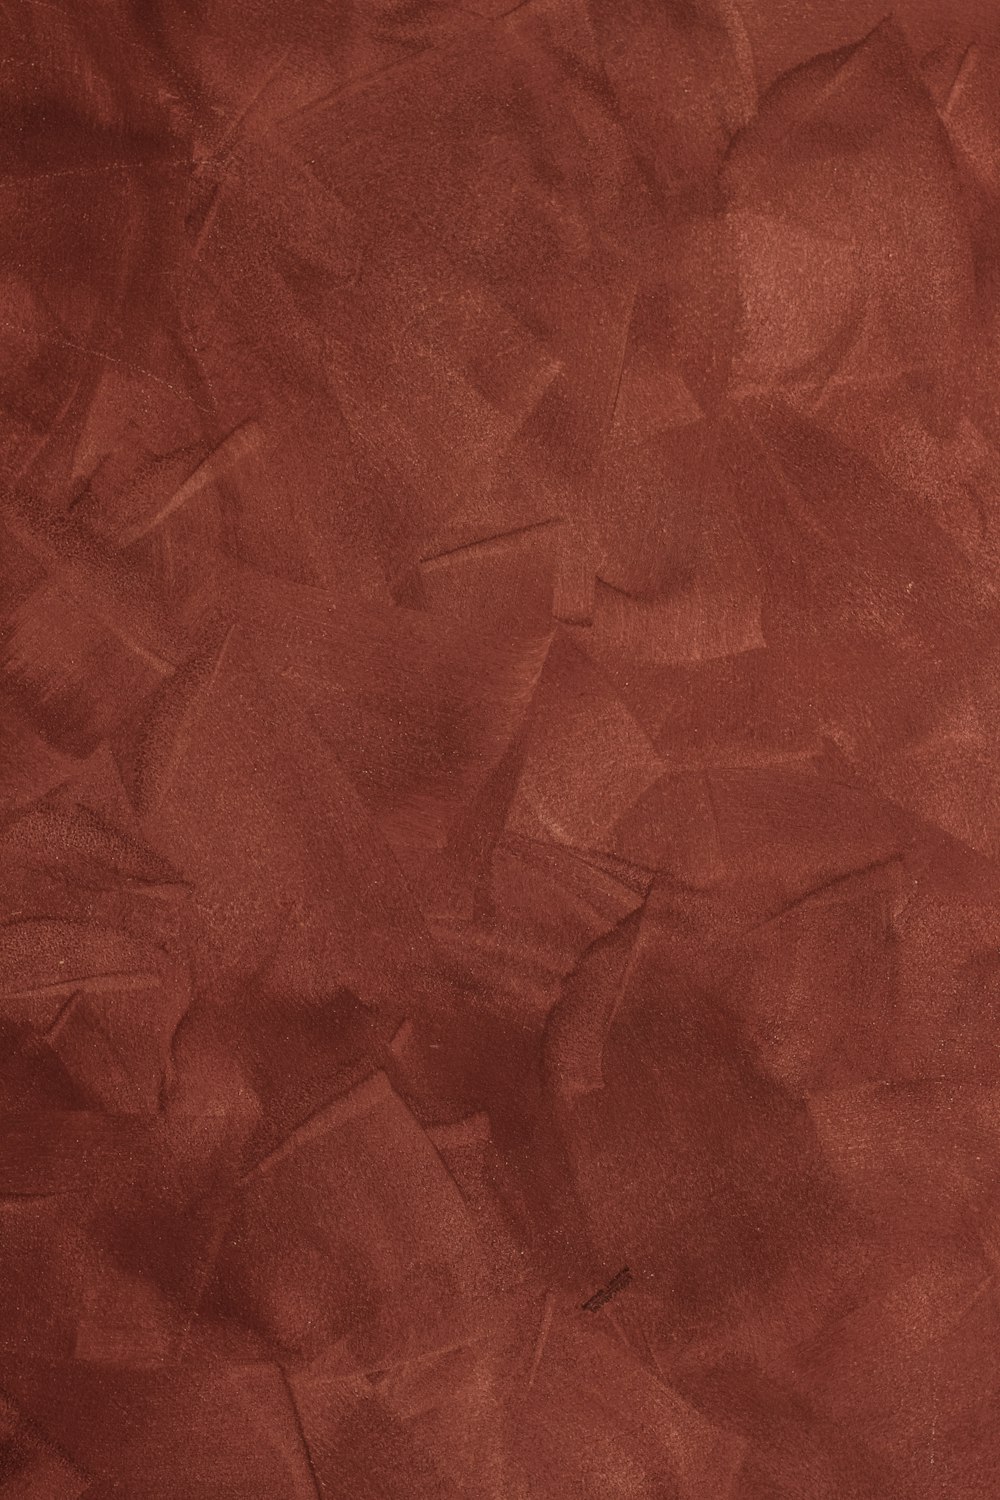 un fondo rojo con una textura rugosa de papel